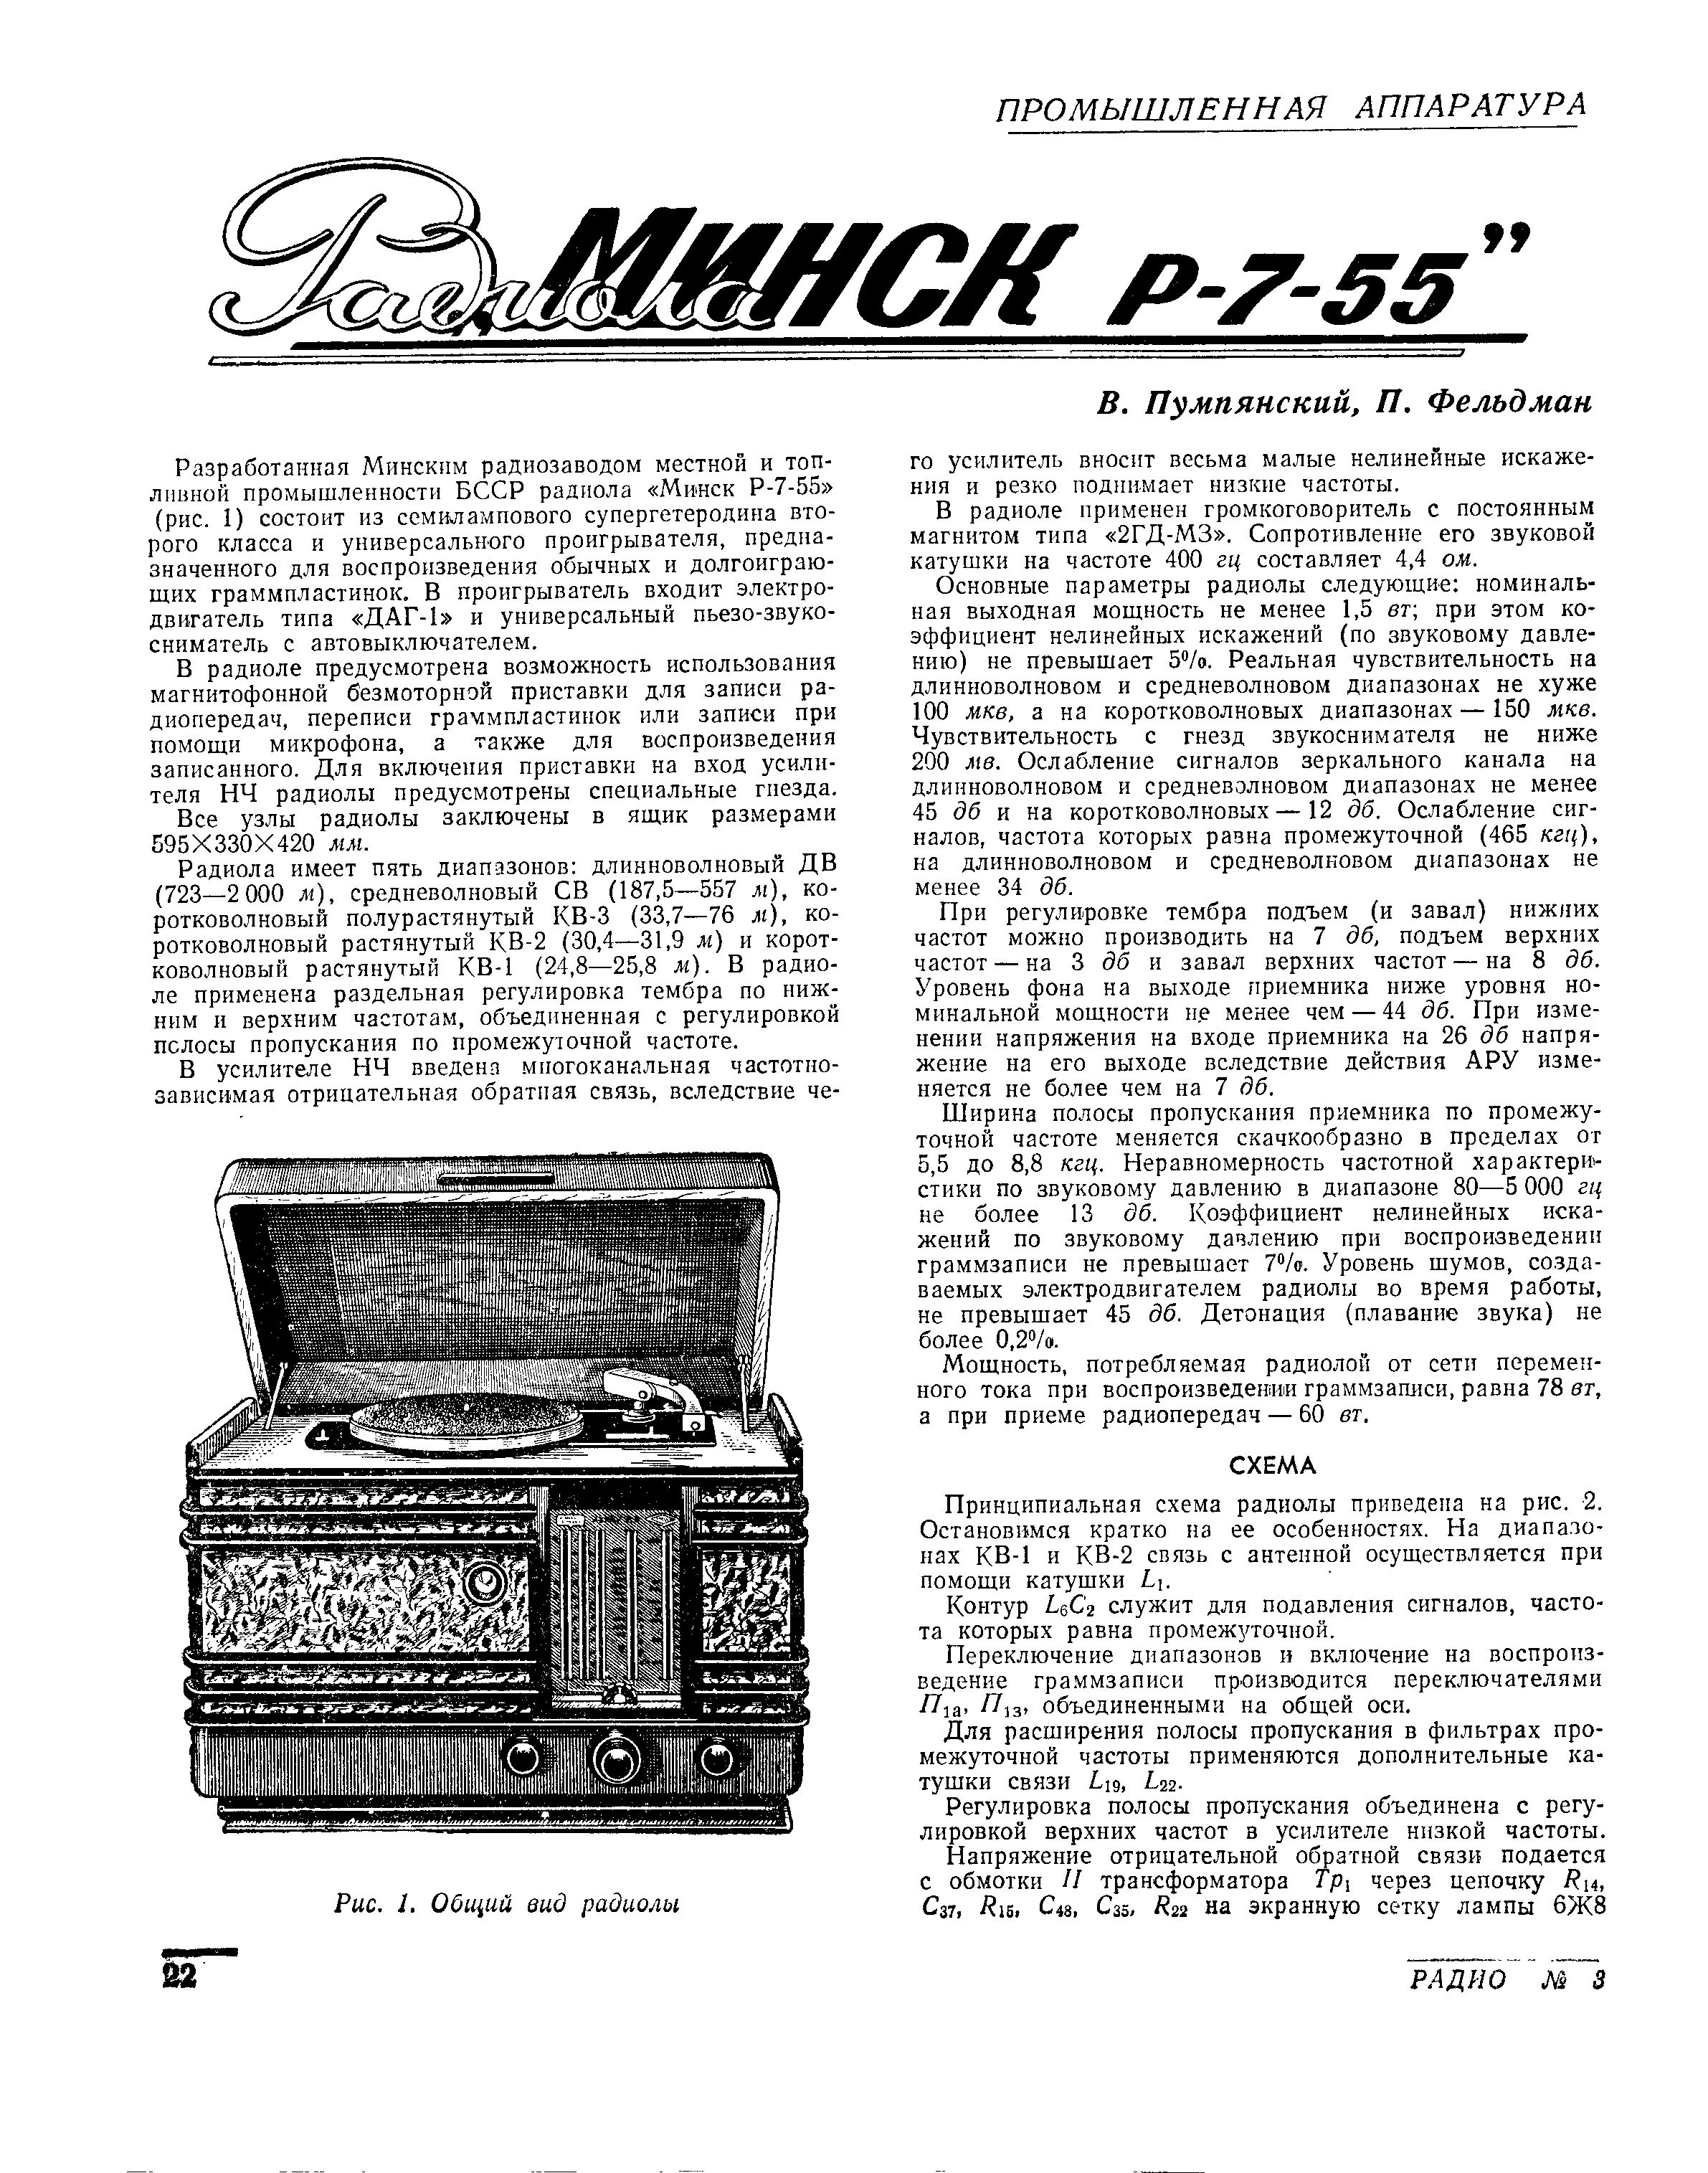 Радиола "МИНСК Р-7-55"